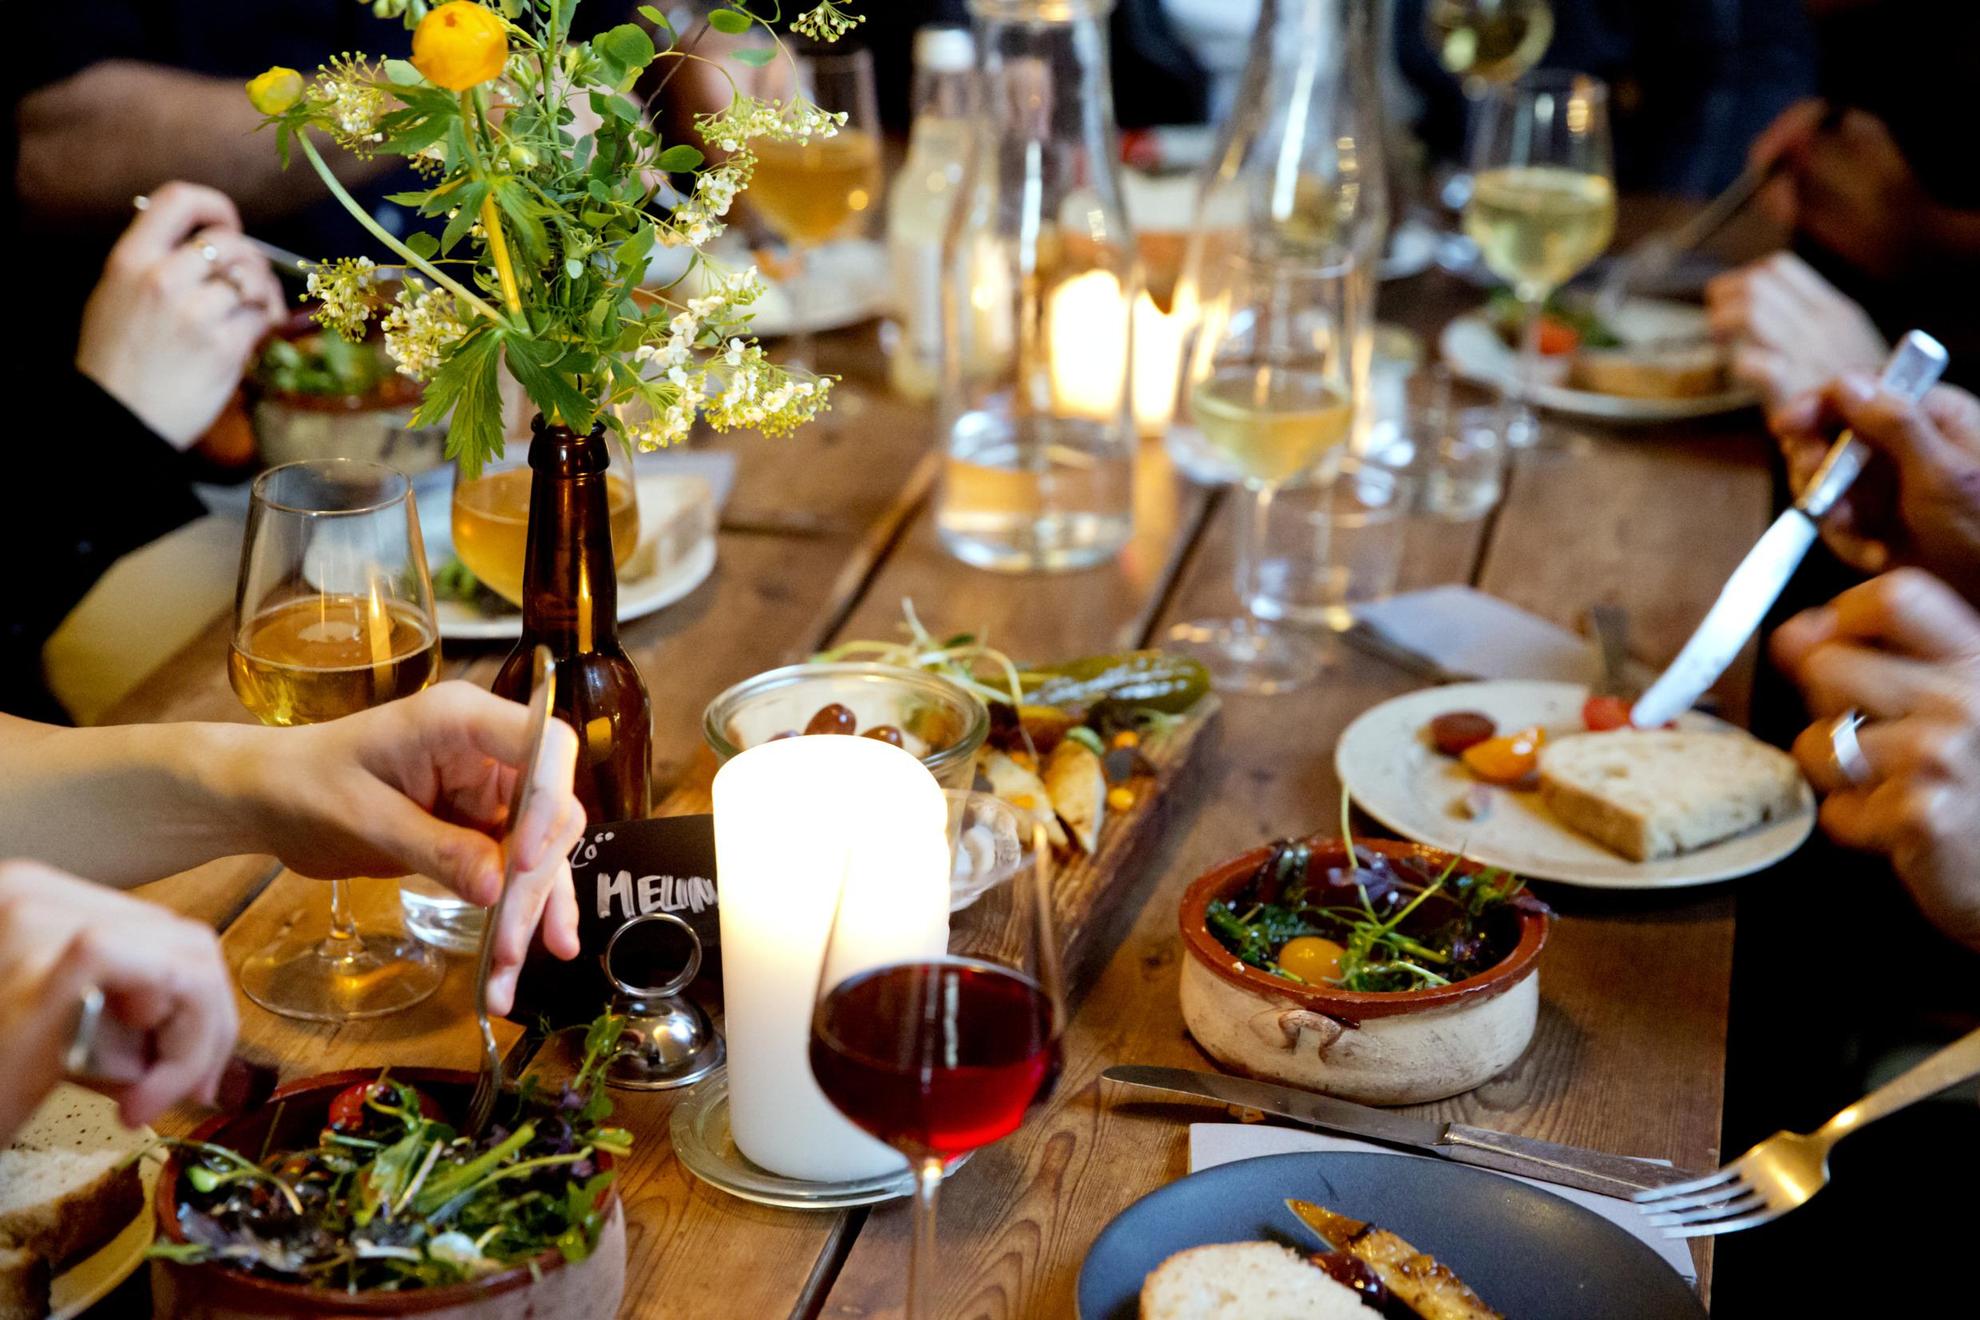 Een houten tafel waarop kleine vegetarische gerechten staan. Iemand schept salade van een bord op. Rondom de tafel staan wijnglazen en kleine witte borden.